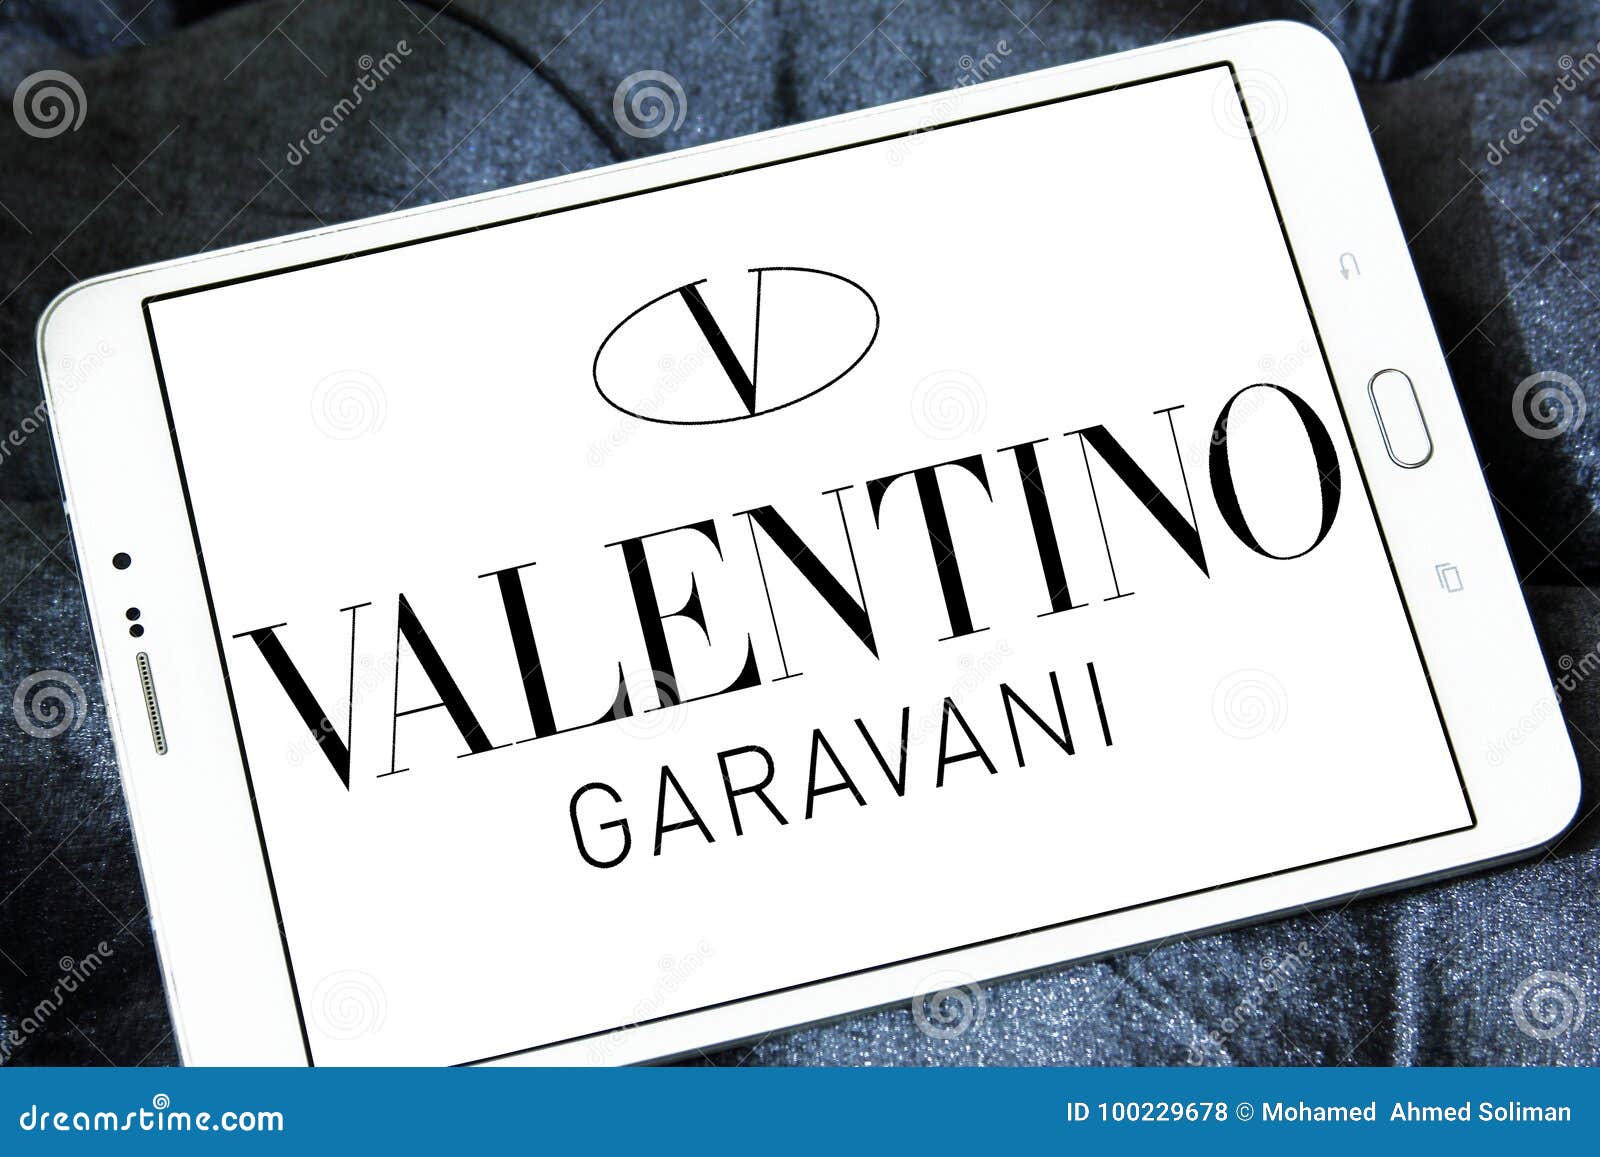 Valentino Garavani Brand Logo Editorial Photo | CartoonDealer.com ...